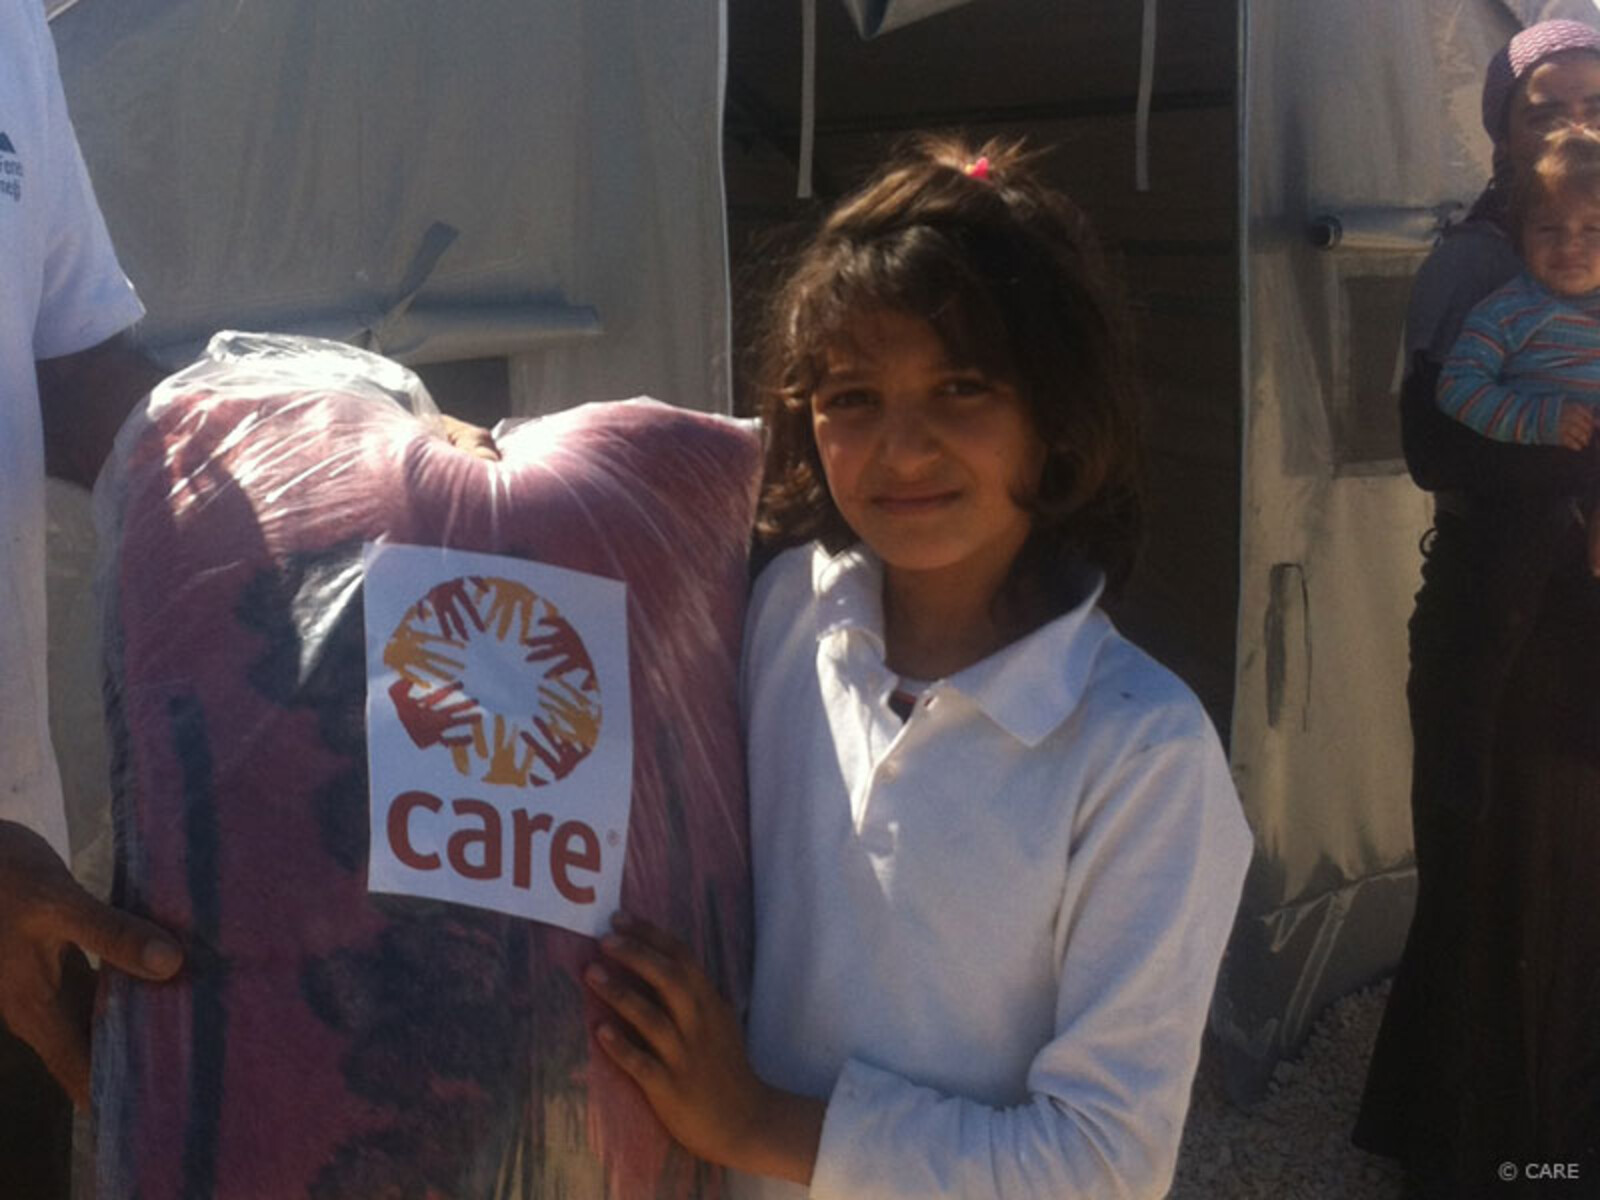 In Syrien, in der Türkei, in Jordanien und im Nordirak hilft CARE mit Decken, Öfen, Heizmaterial aber auch mit Nahrungs- und Bargeldhilfen. Help – Hilfe zur Selbsthilfe unterstützt Flüchtlinge in Jordanien mit Decken, Laken und Matratzen.